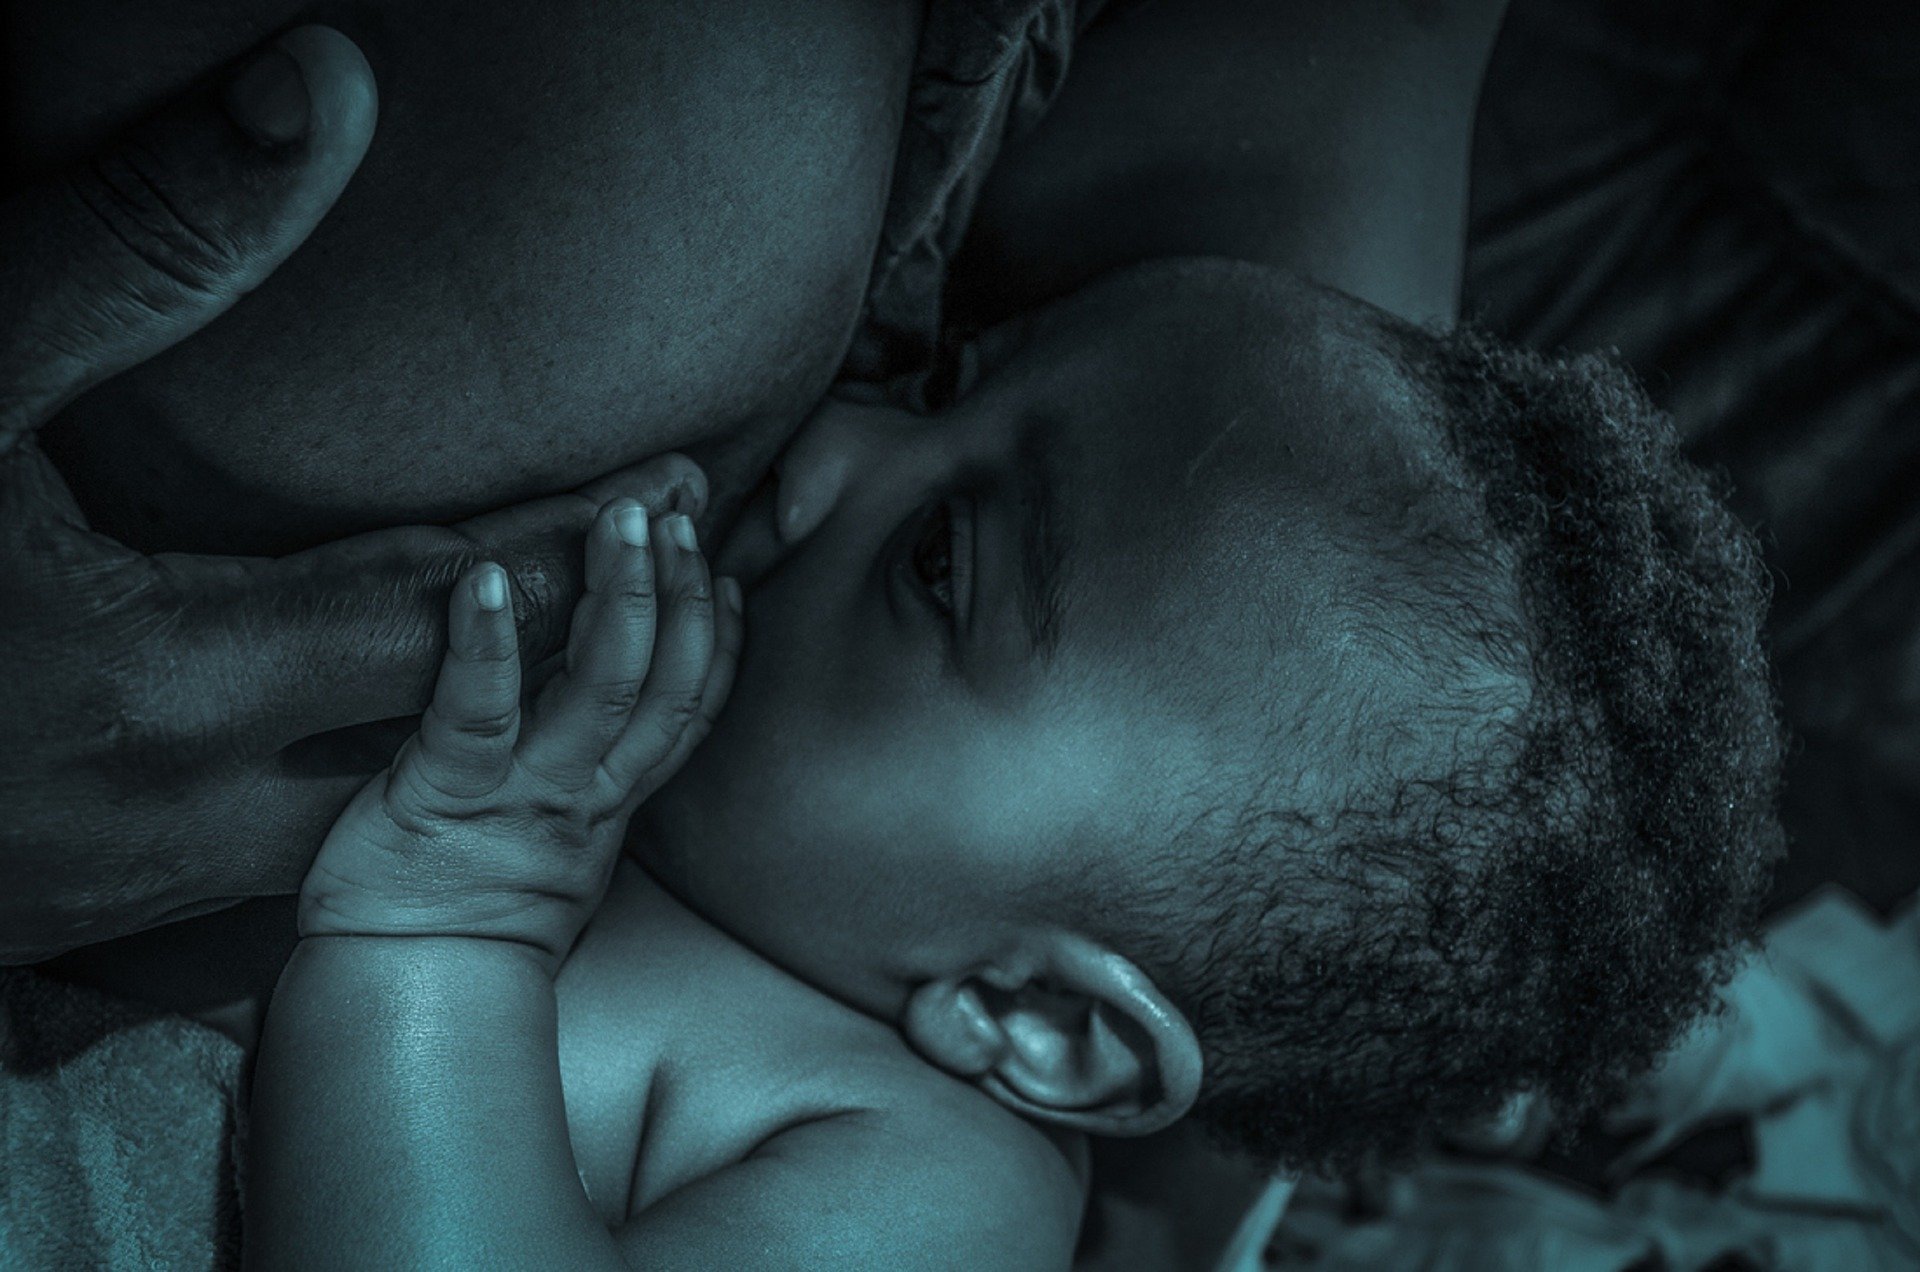 L’allaitement pendant la grossesse est sans danger pour la mère, le fœtus et l’enfant